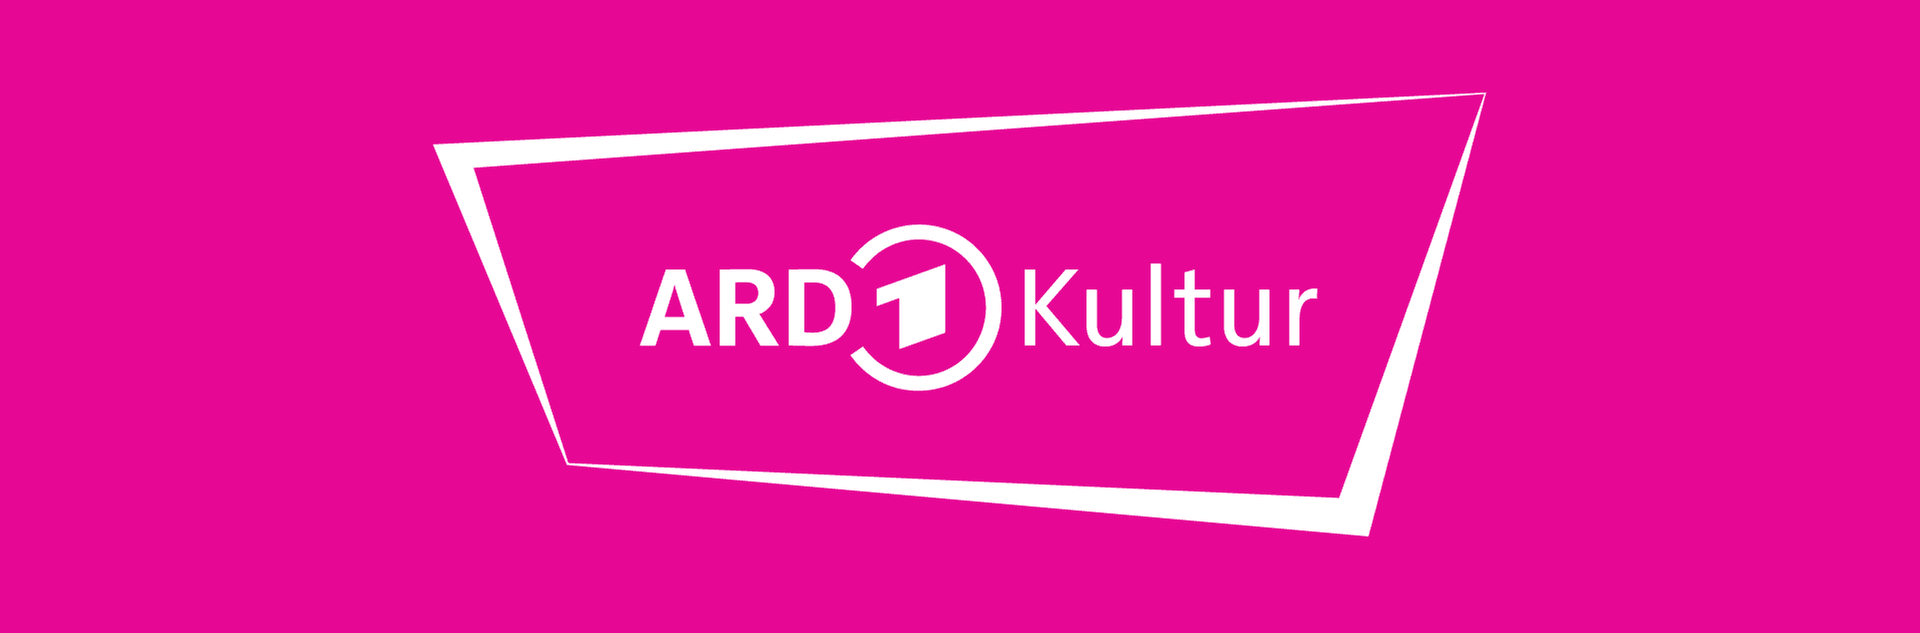 ARD Kultur als Netzwerk